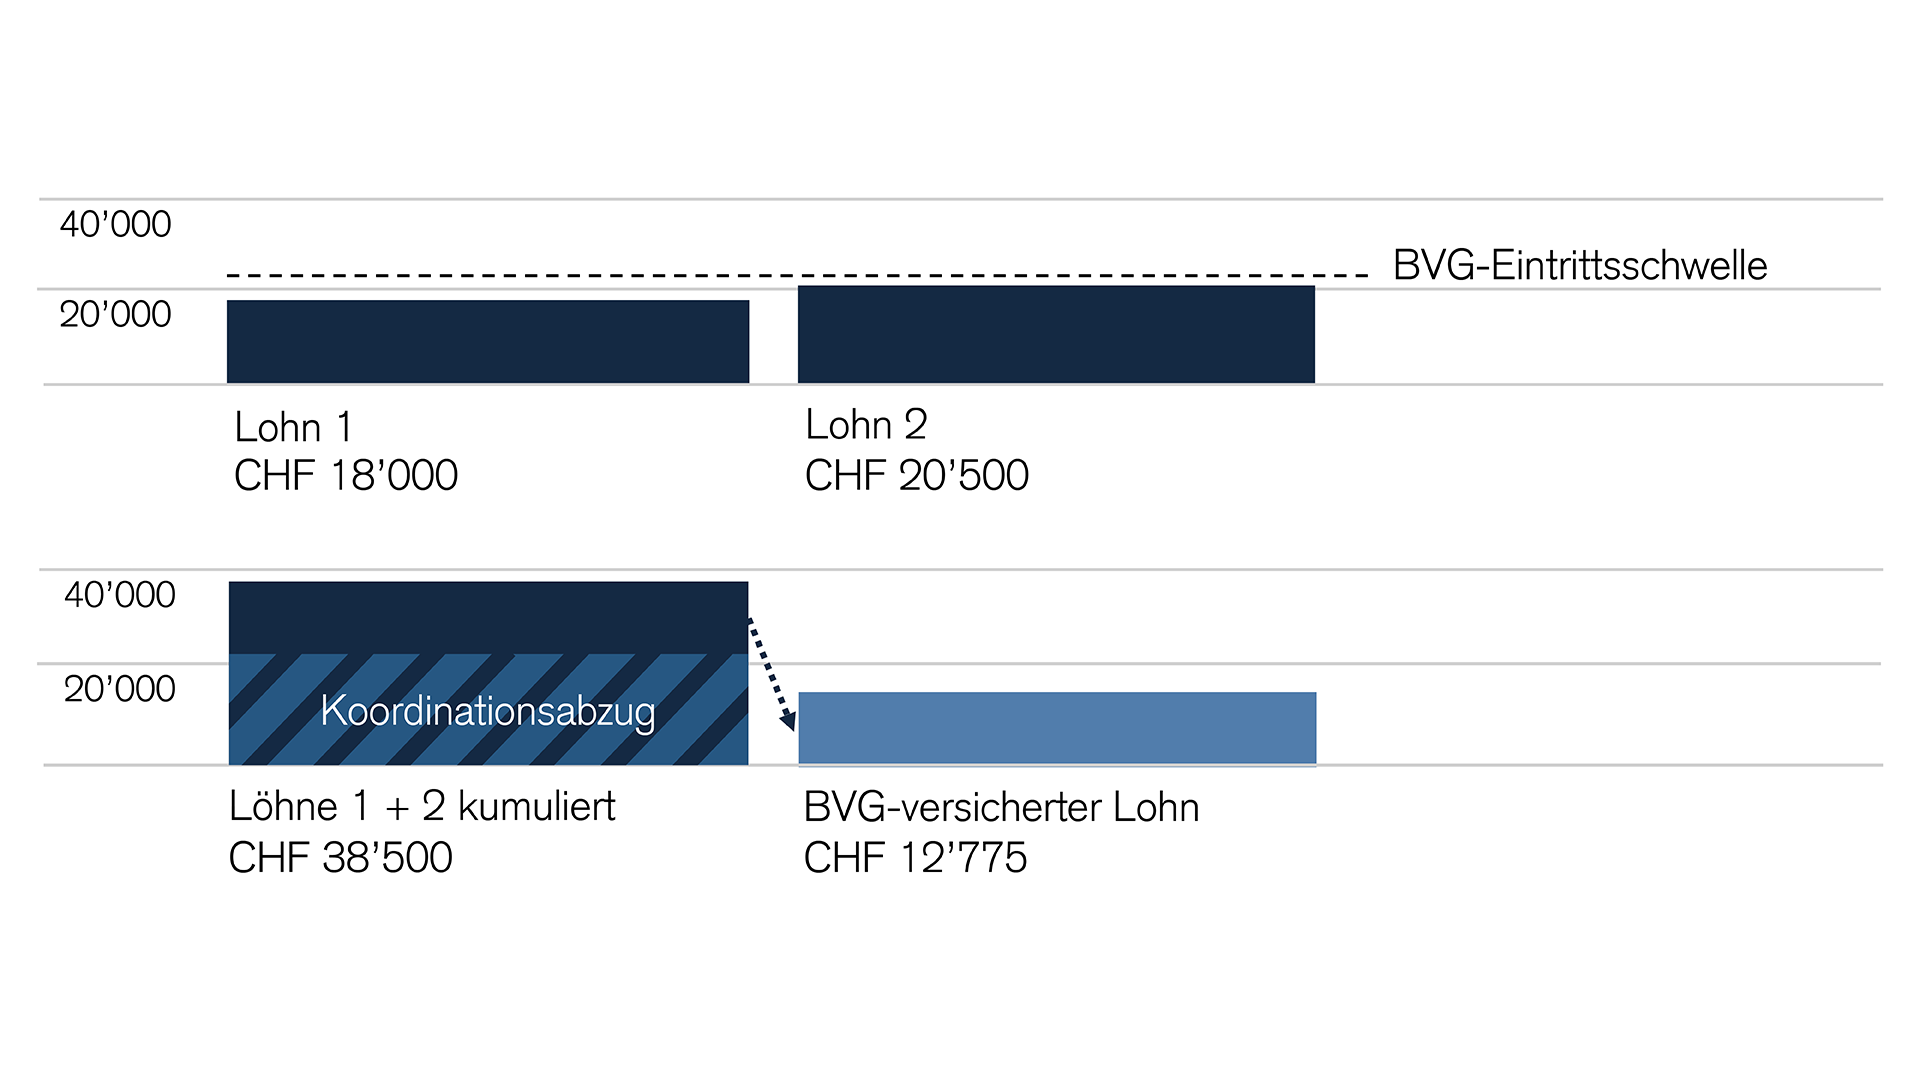 Rechenbeispiel: zwei Löhne, beide unter der BVG-Eintrittsschwelle